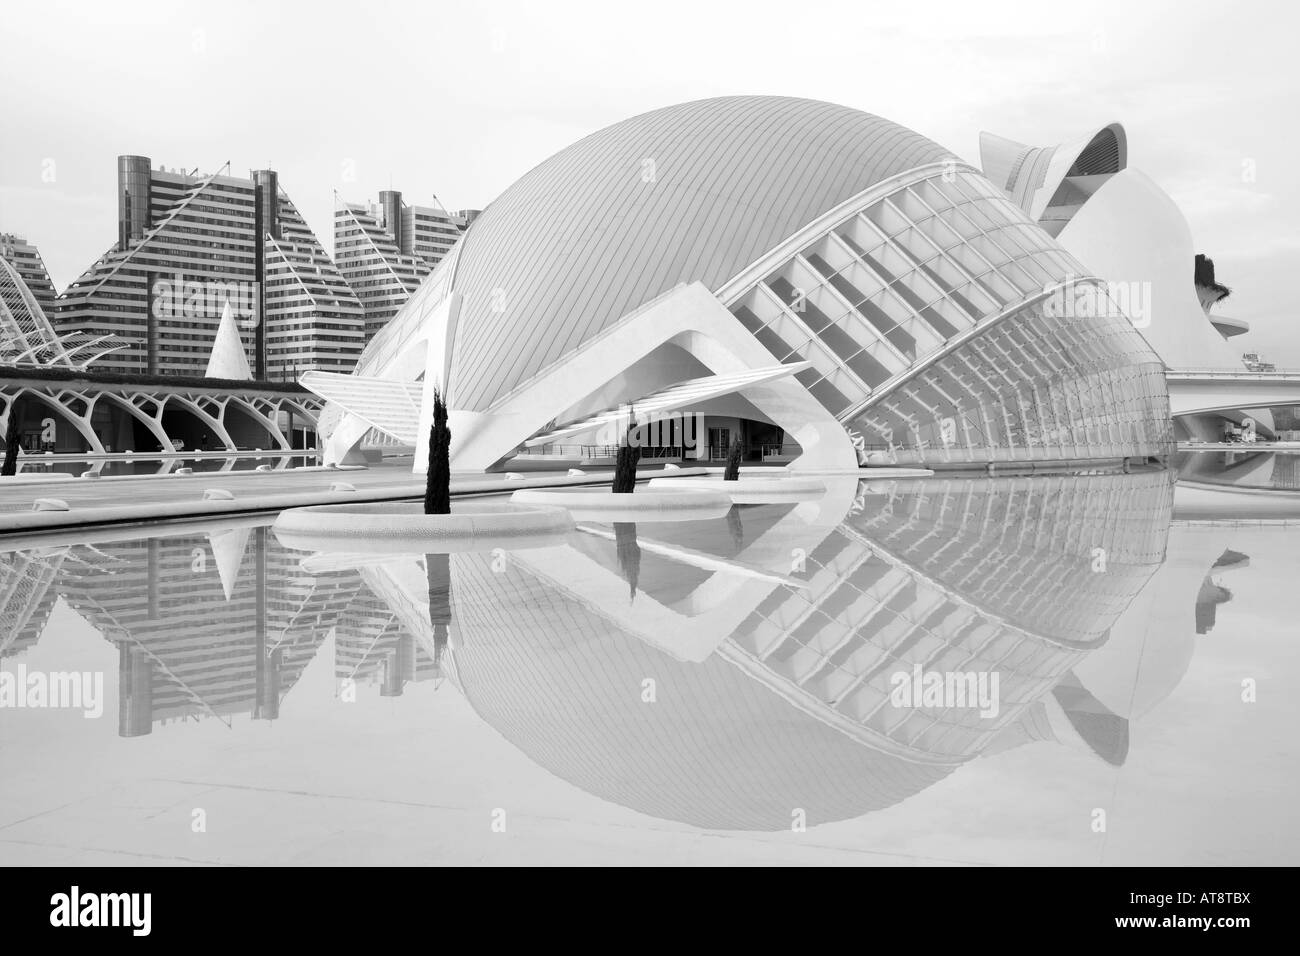 L'Hemisferic, les arts et Science City par Calatrava, Valencia, Espagne Banque D'Images